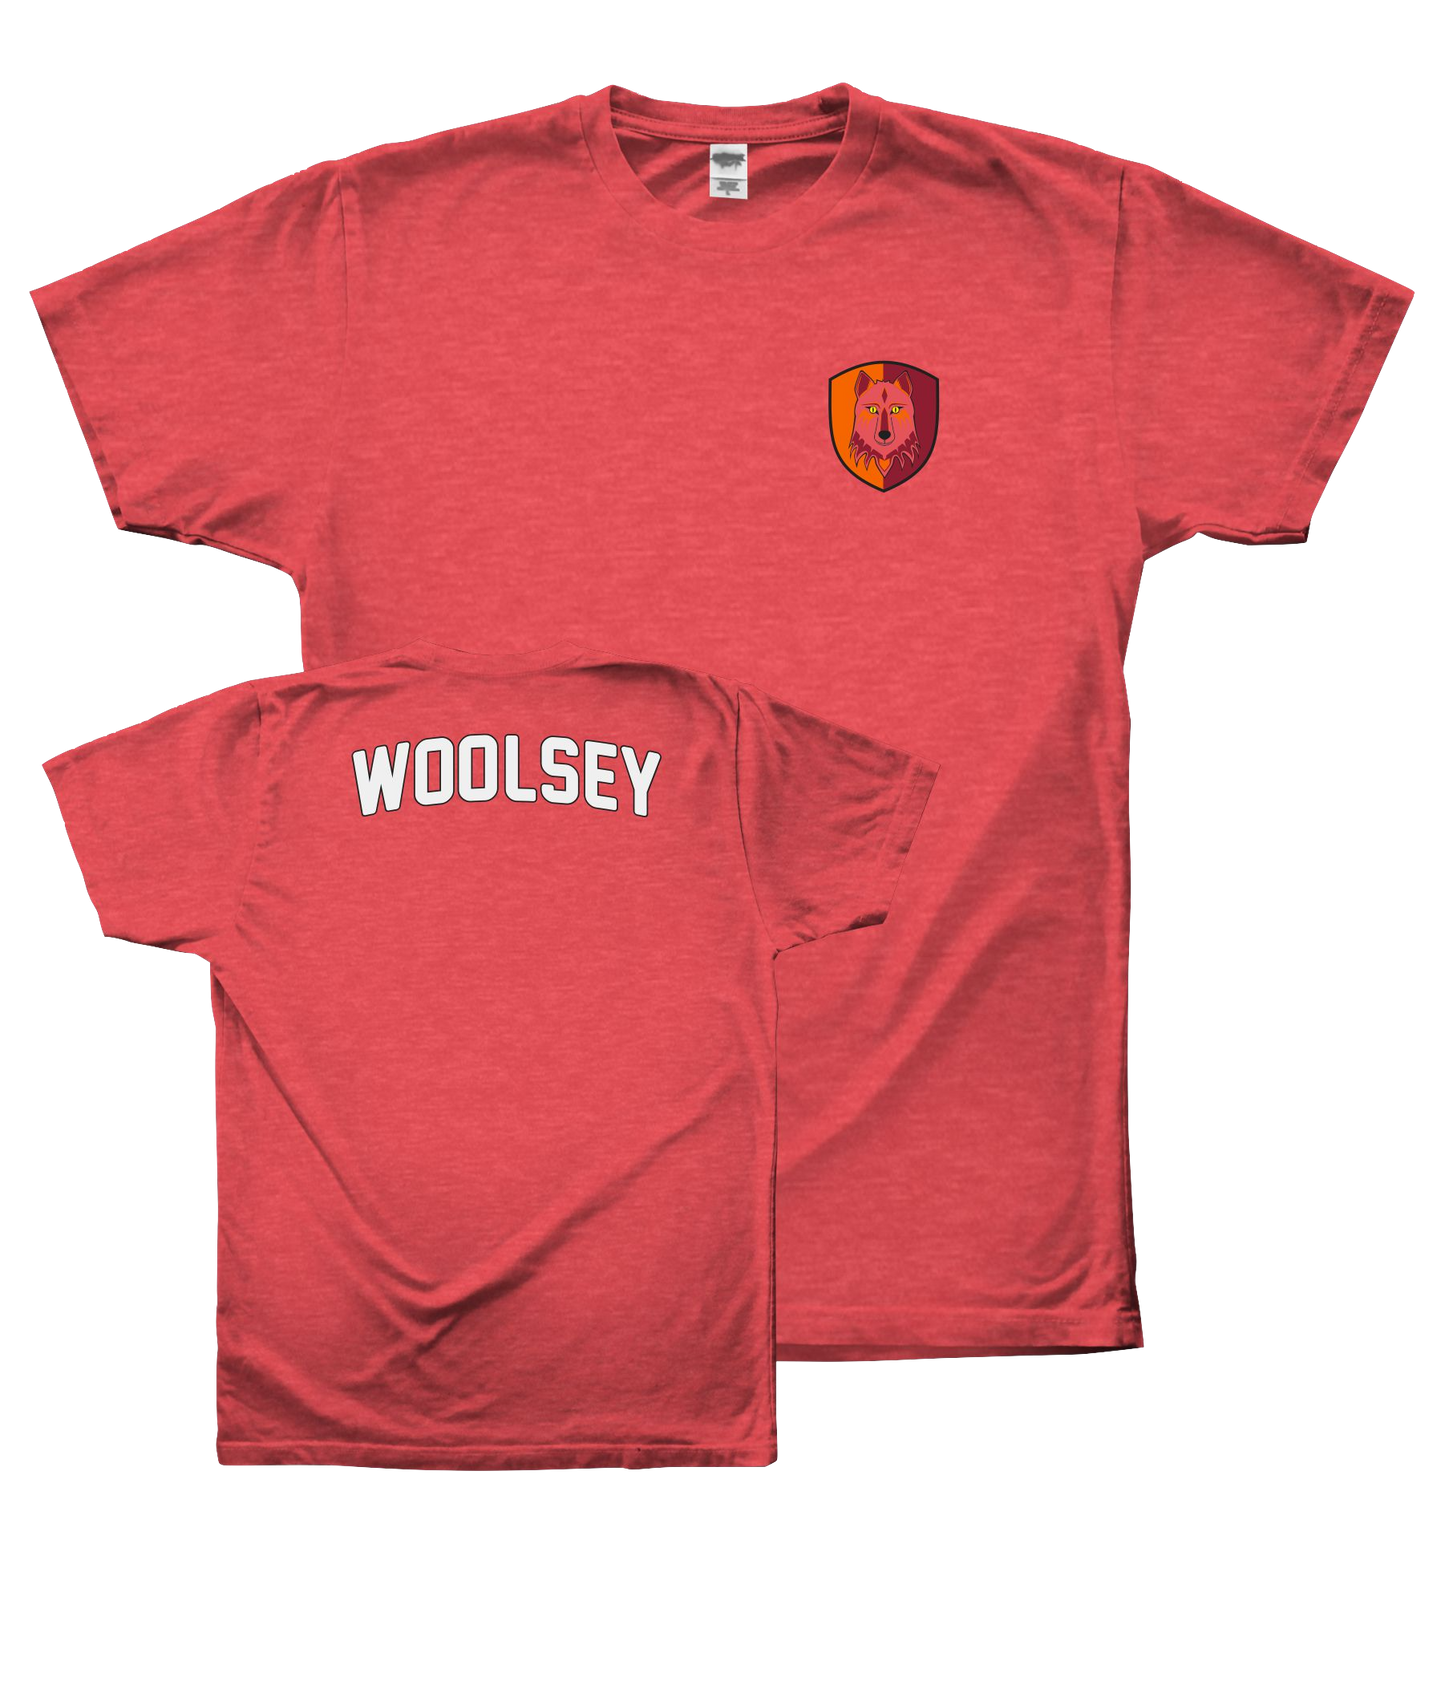 Woolsey Shirt: A